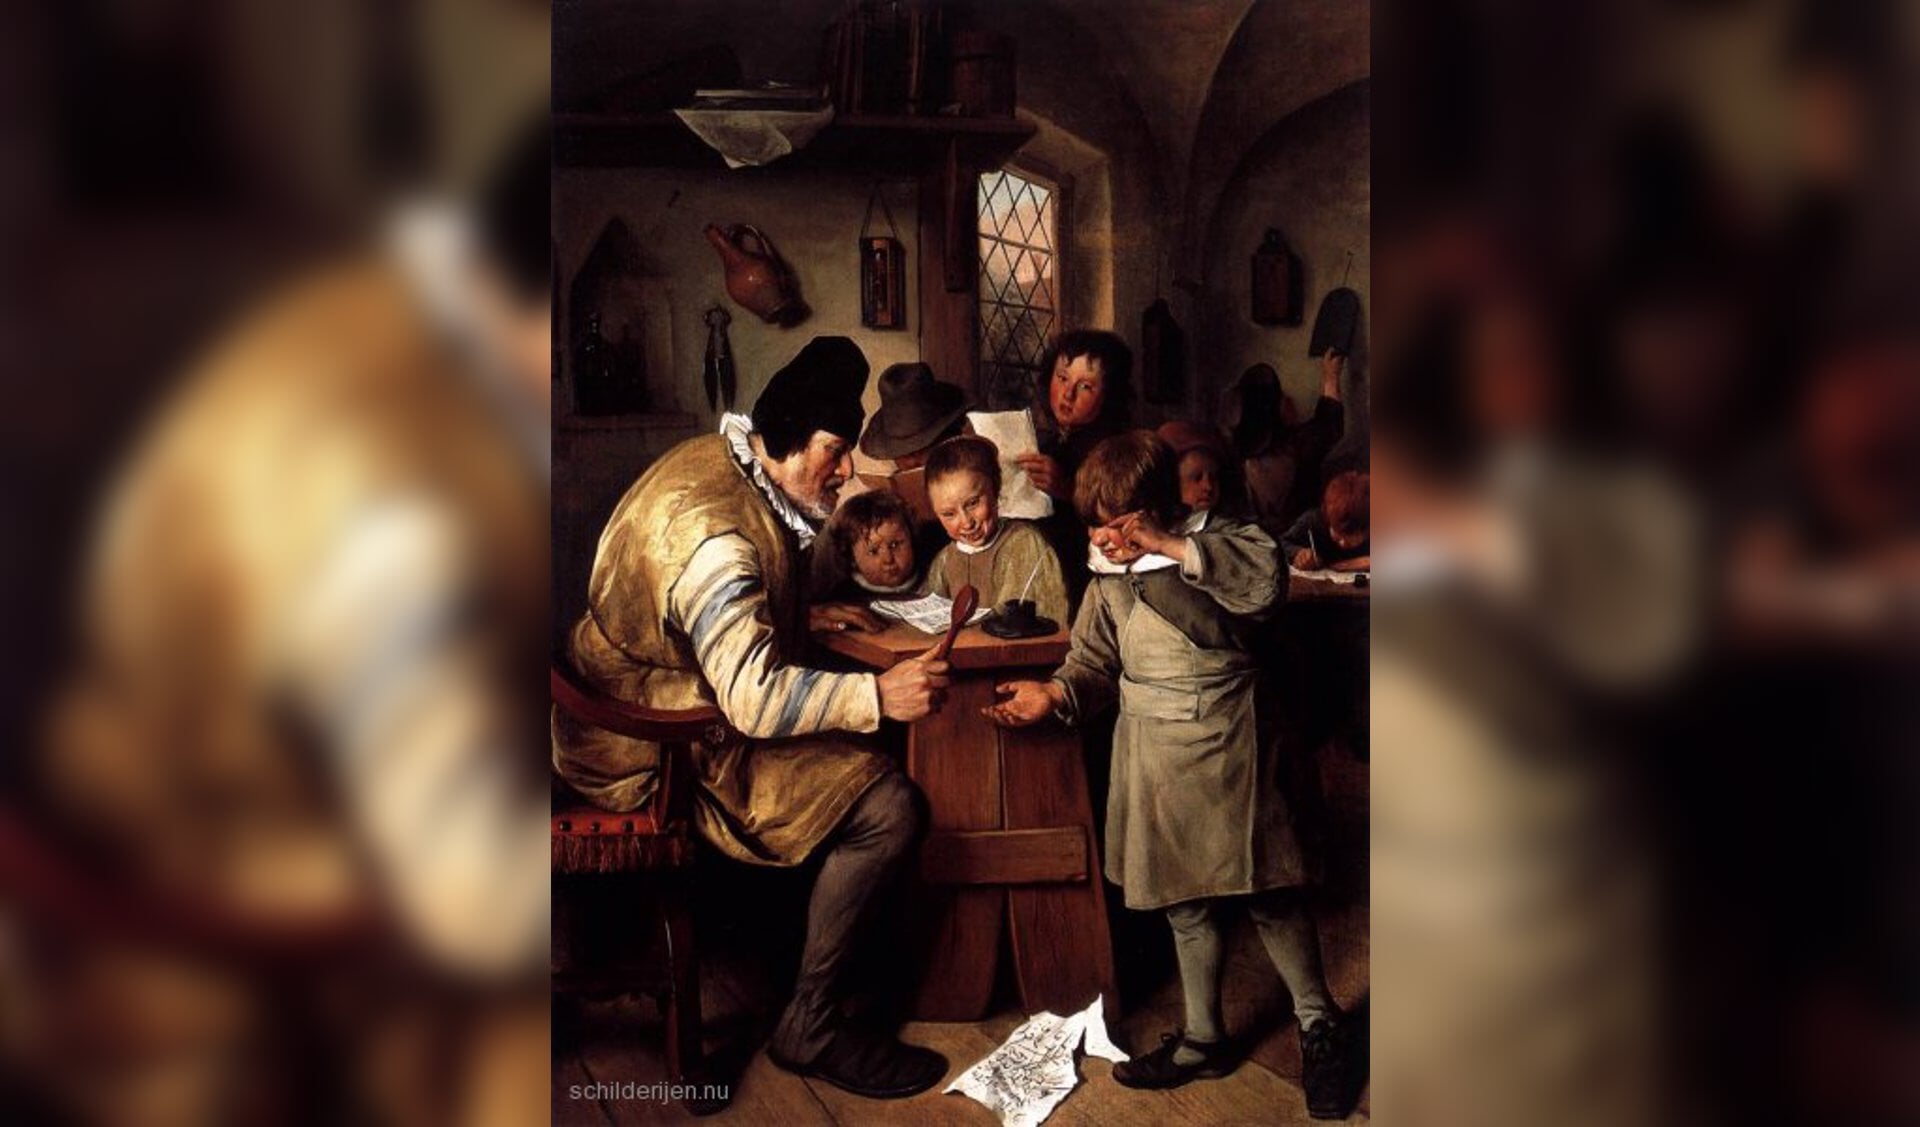  Onderwijs in de Gouden Eeuw: 'De schoolmeeester' van Jan Steen (1626-1679).